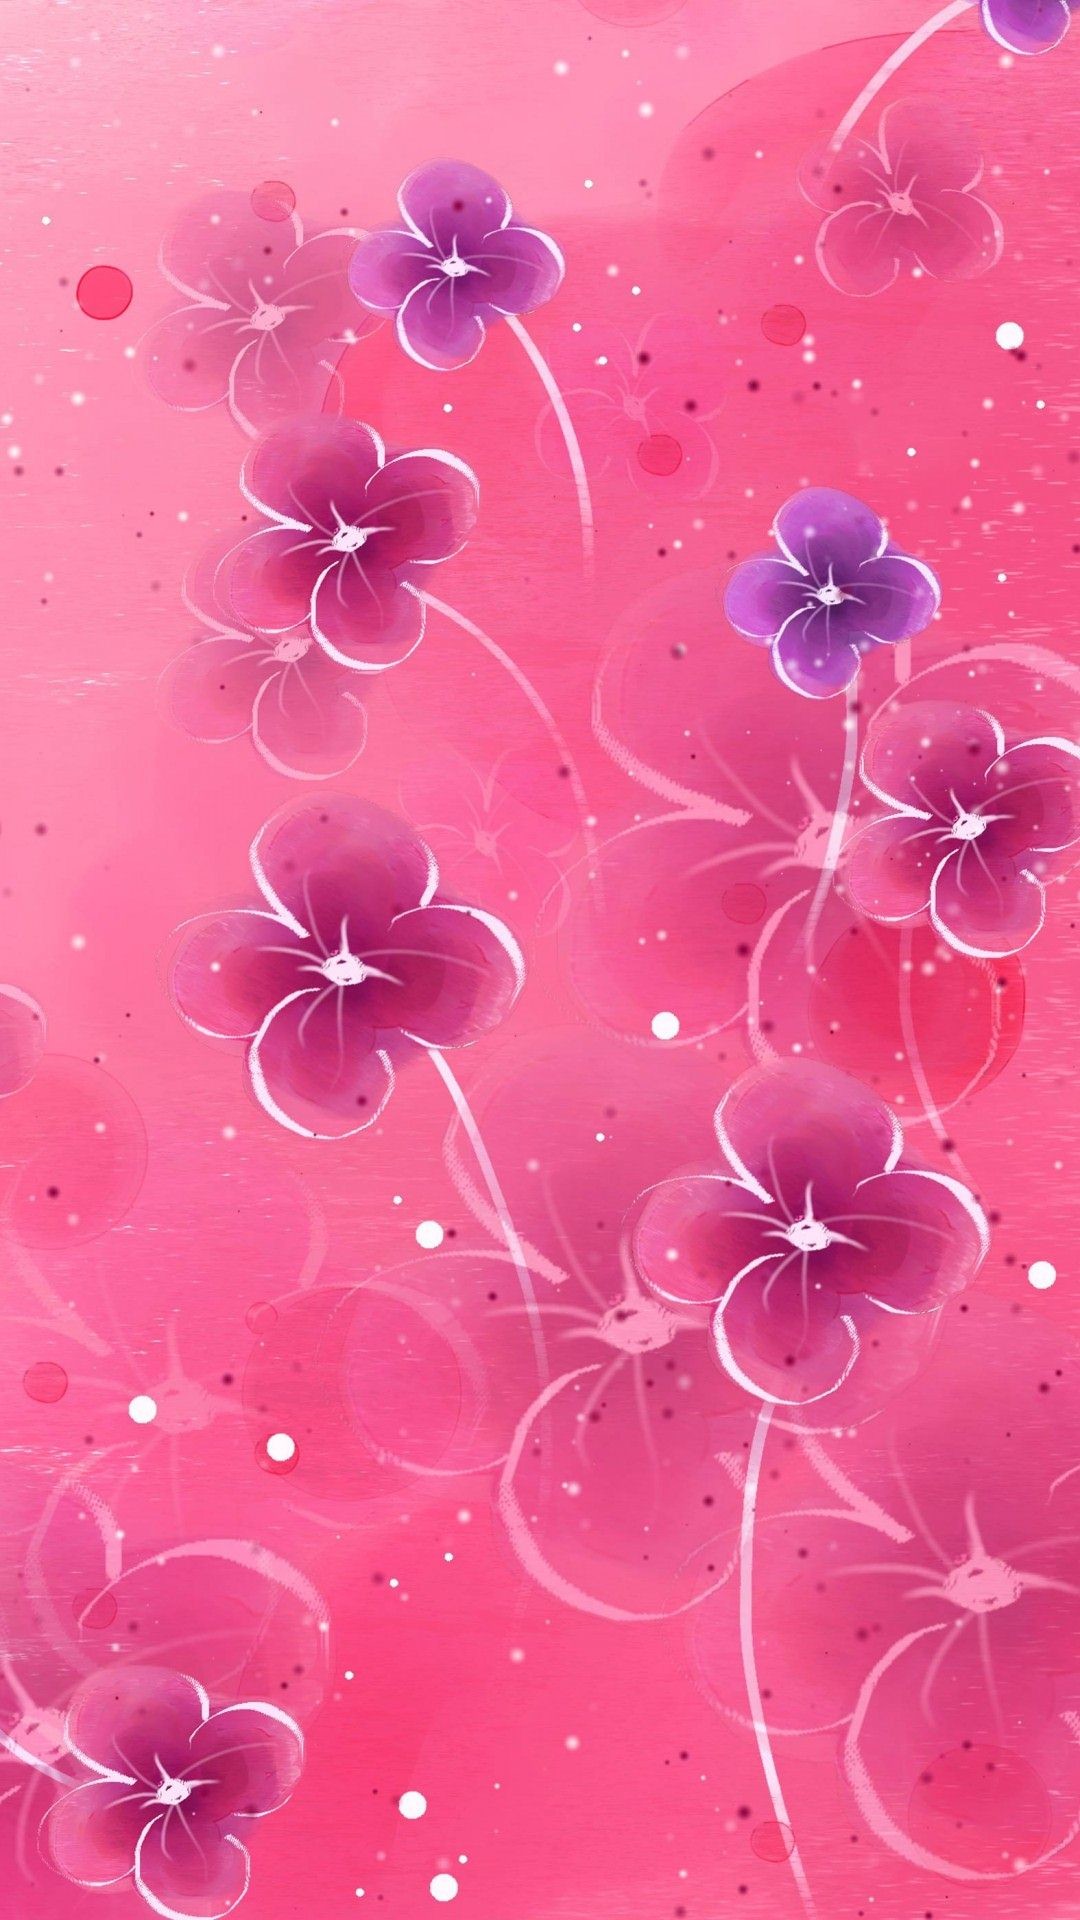 50 Flower iPhone Wallpaper  WallpaperSafari